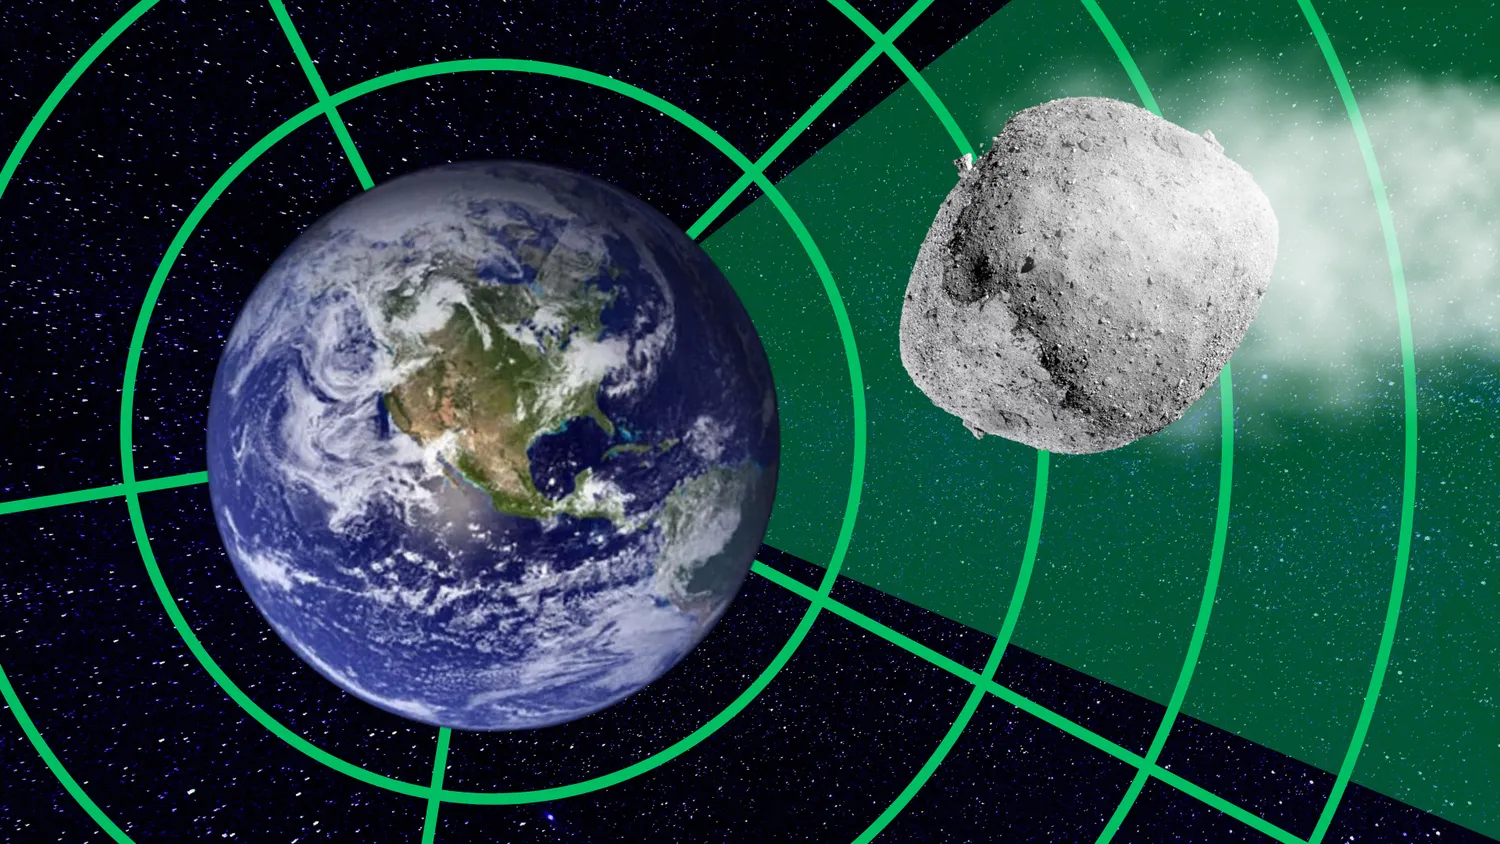 Eine Illustration zeigt das Radar, das einen Asteroiden bei seiner Annäherung an die Erde aufspürt